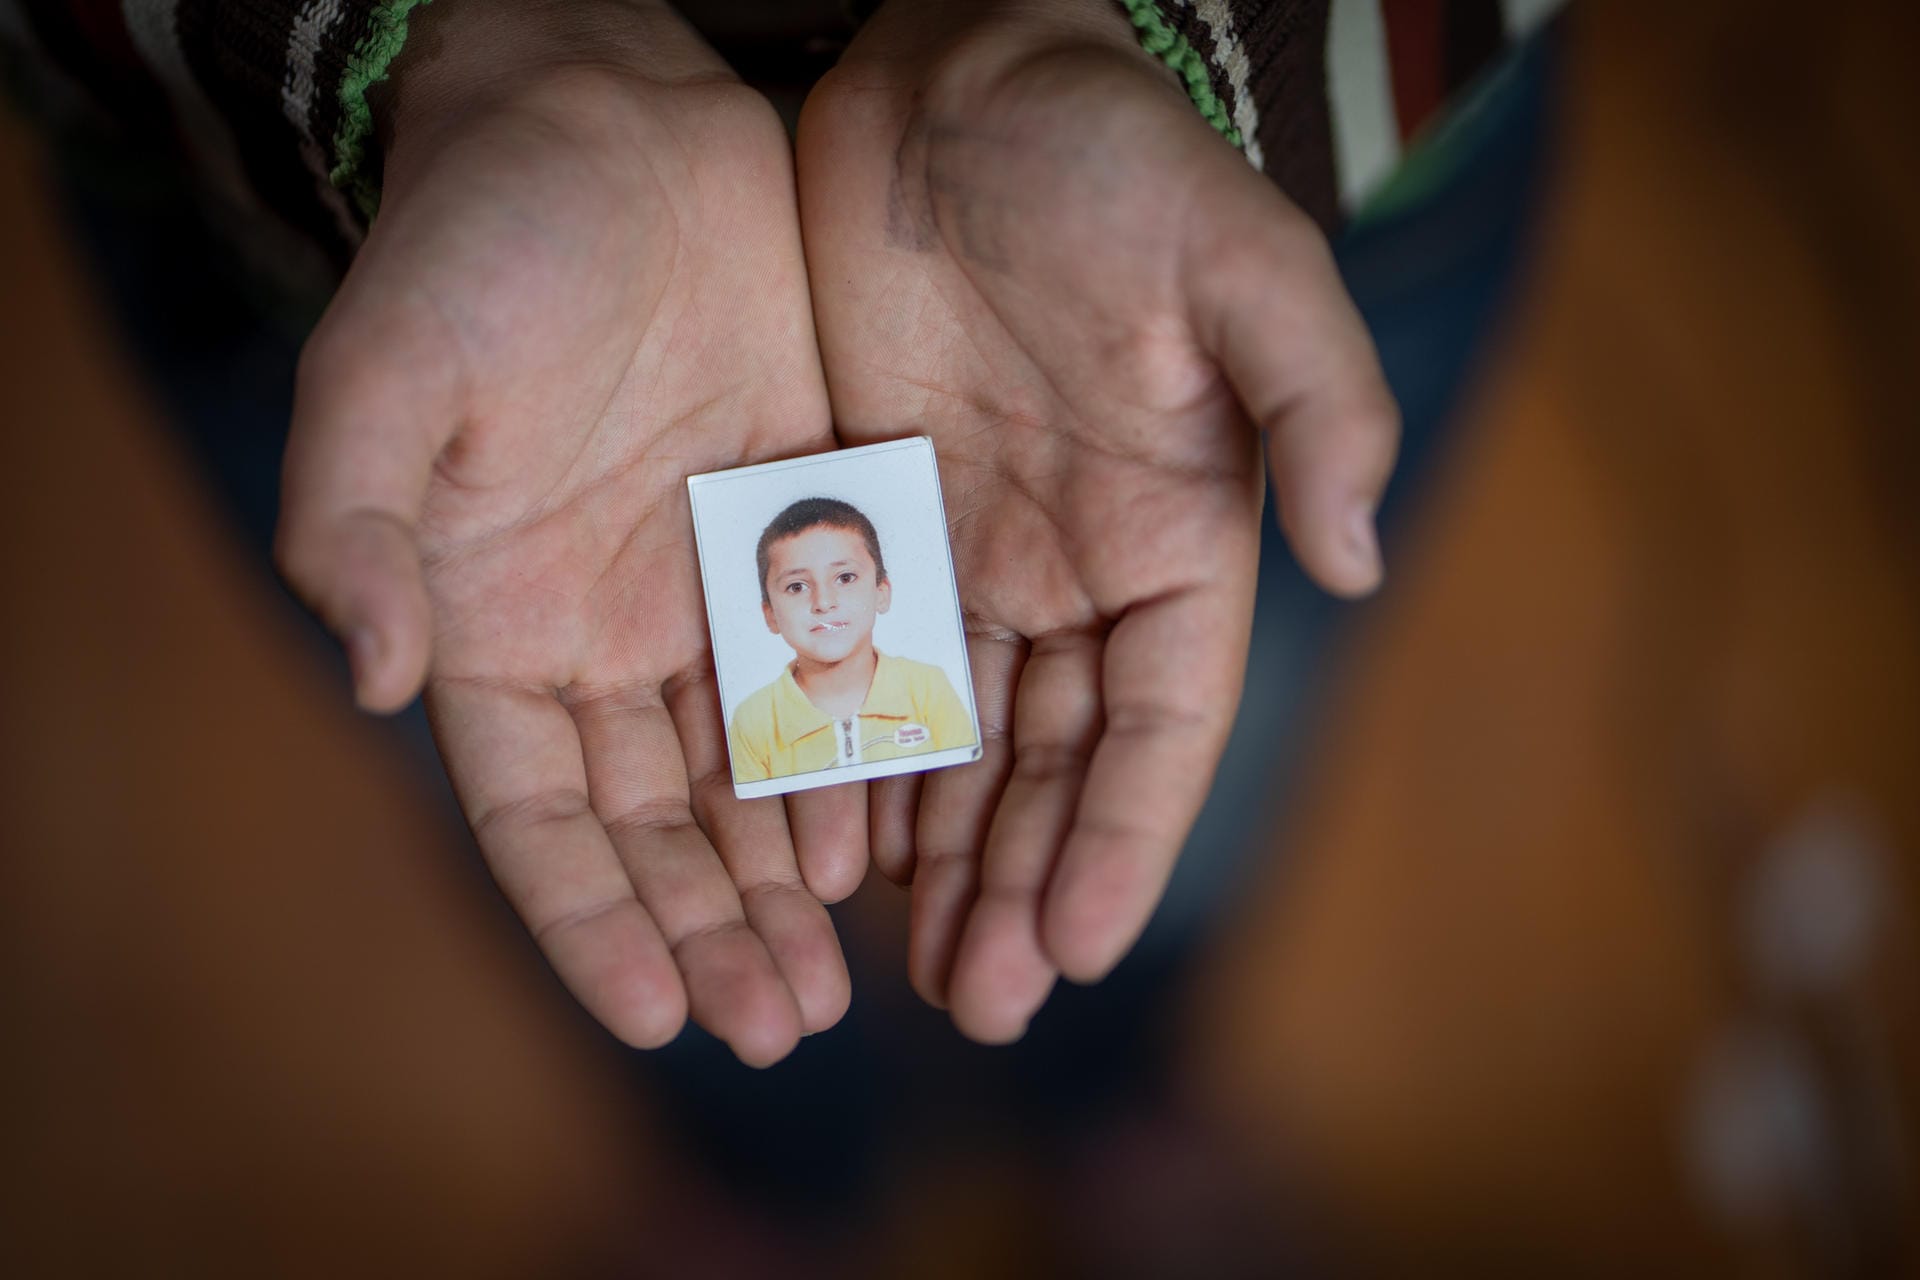 Yahya ist 13 Jahre alt. Als er Syrien verlassen musste, war er sechs. Der Unicef zeigt er ein Foto von sich als Schulanfänger. "Mein größter Wunsch ist es, nach Syrien zurückzukehren und mein Haus und meine Schule zu sehen", sagt Yahya zu Unicef. "Ich wünsche mir, dass Syrien wieder sicher wird."